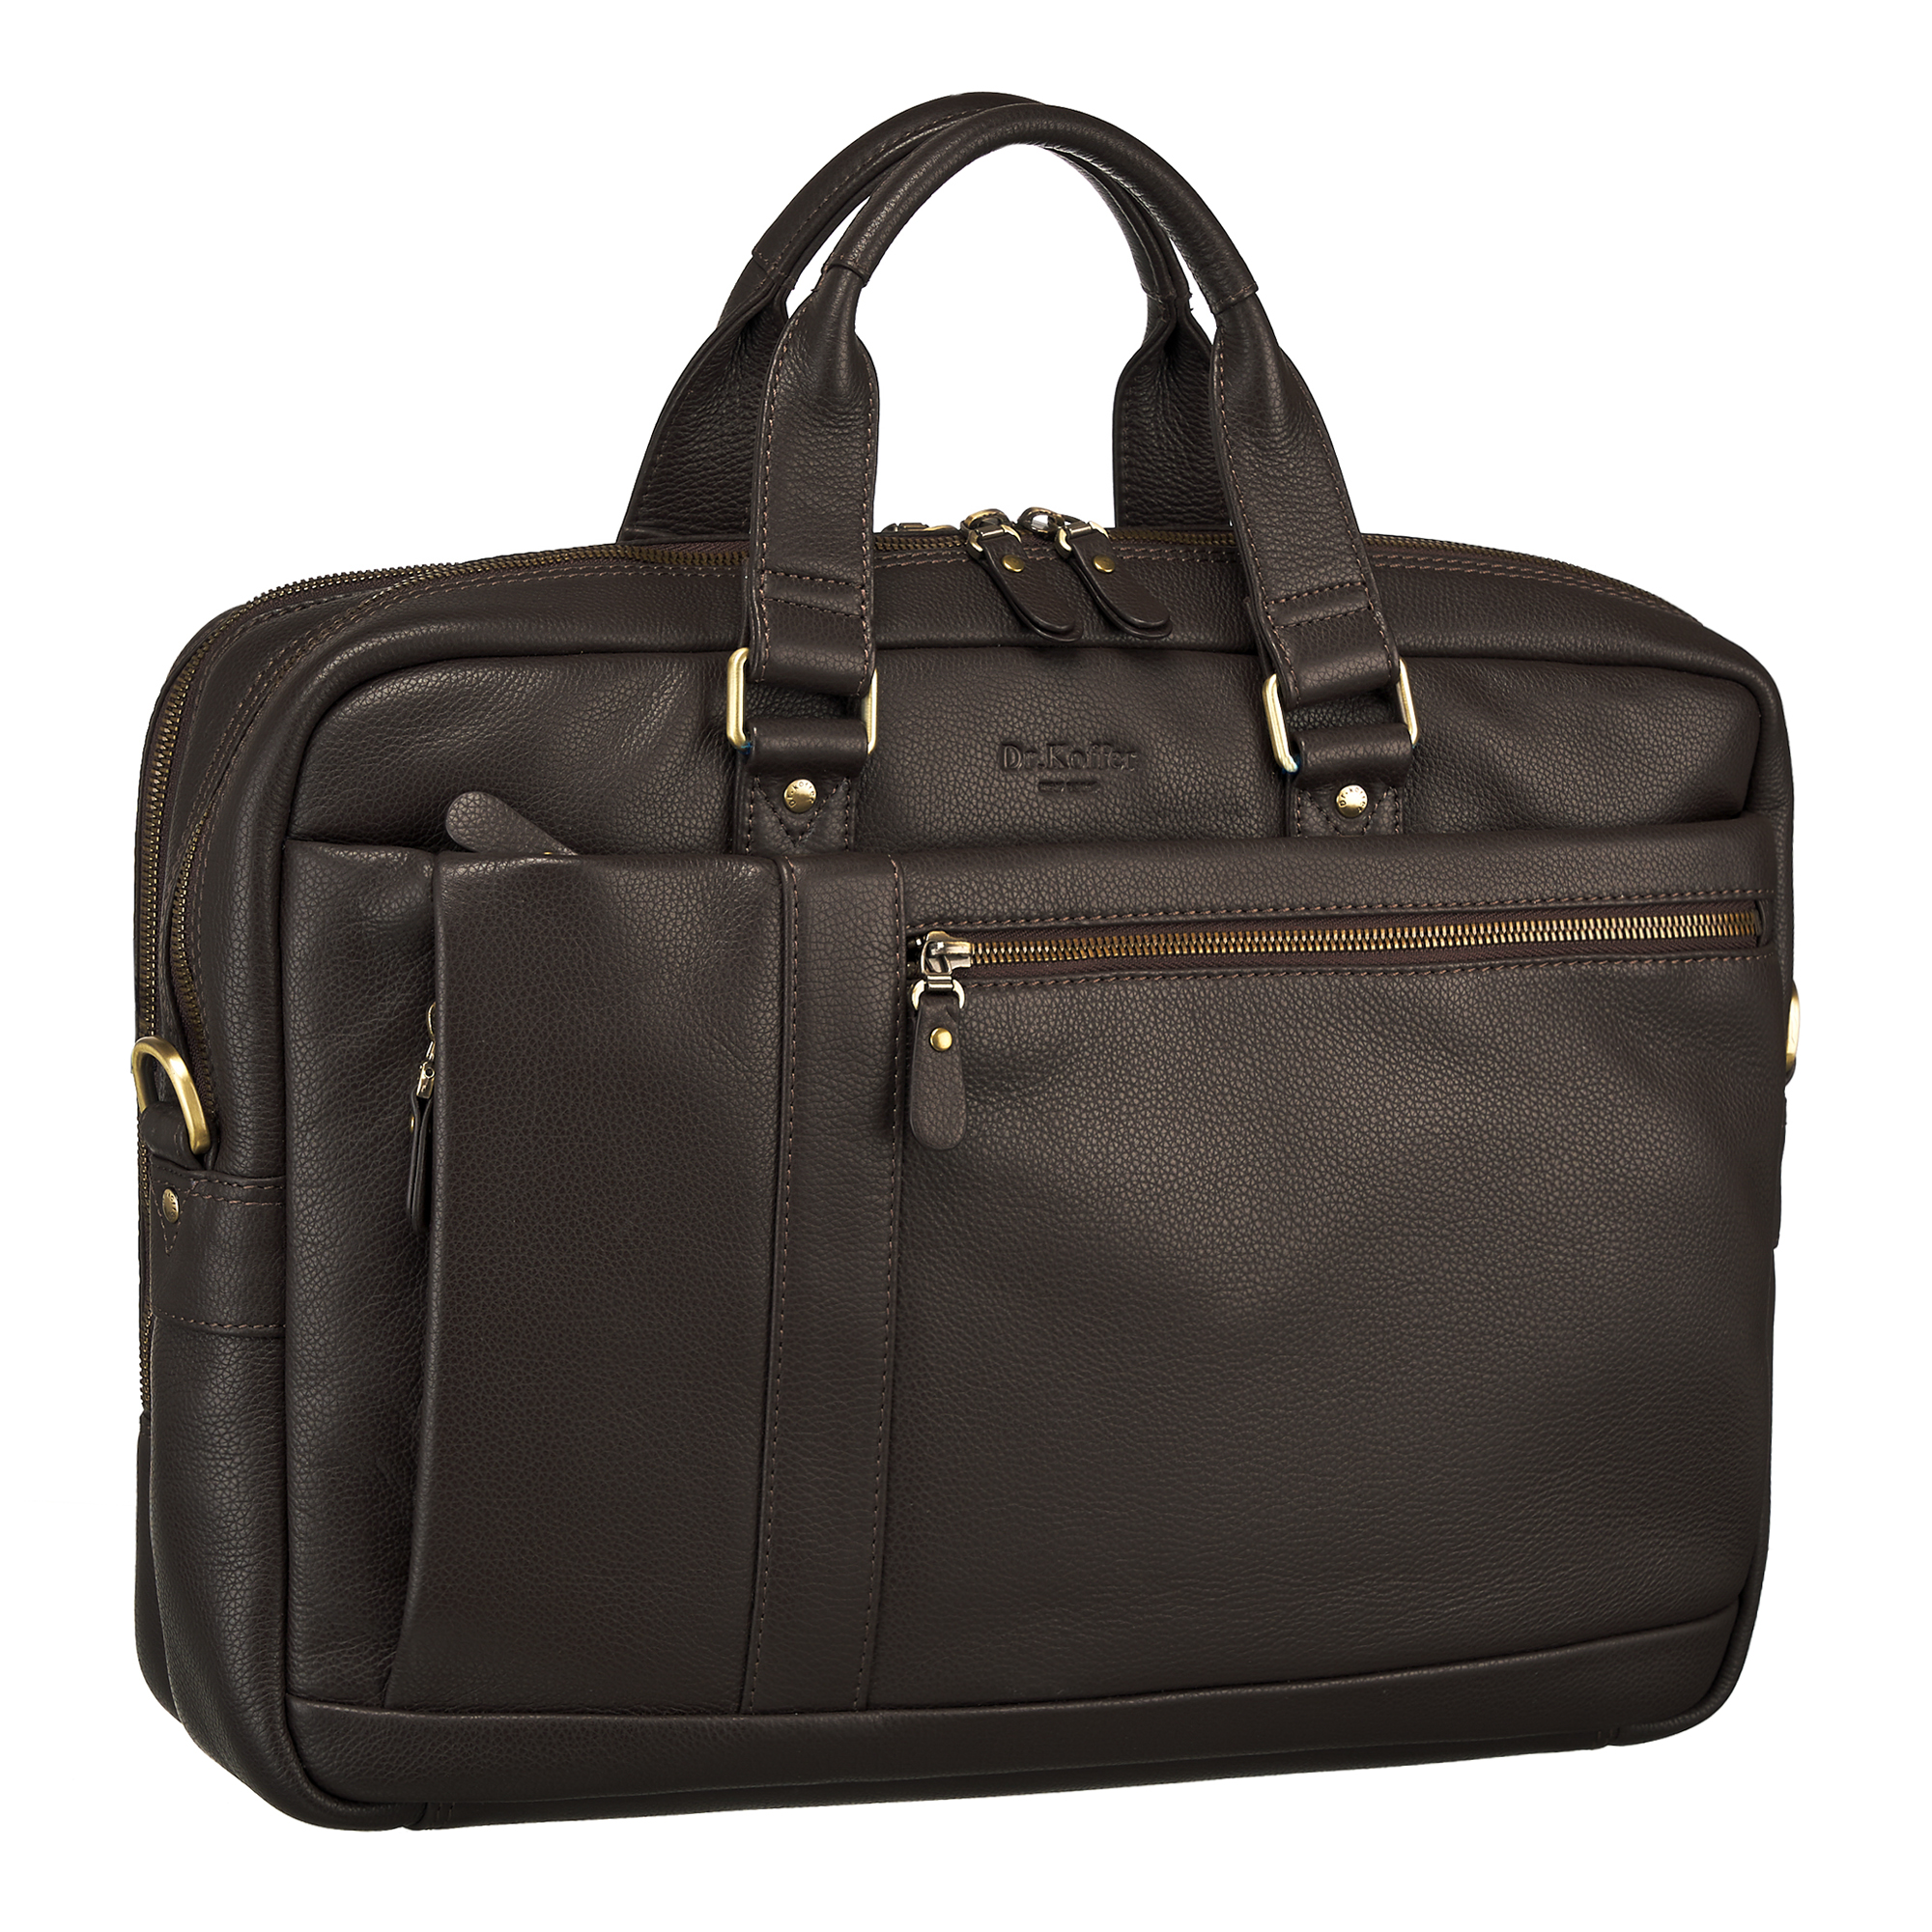 Др.Коффер M402761-260-09 сумка для документов, цвет коричневый